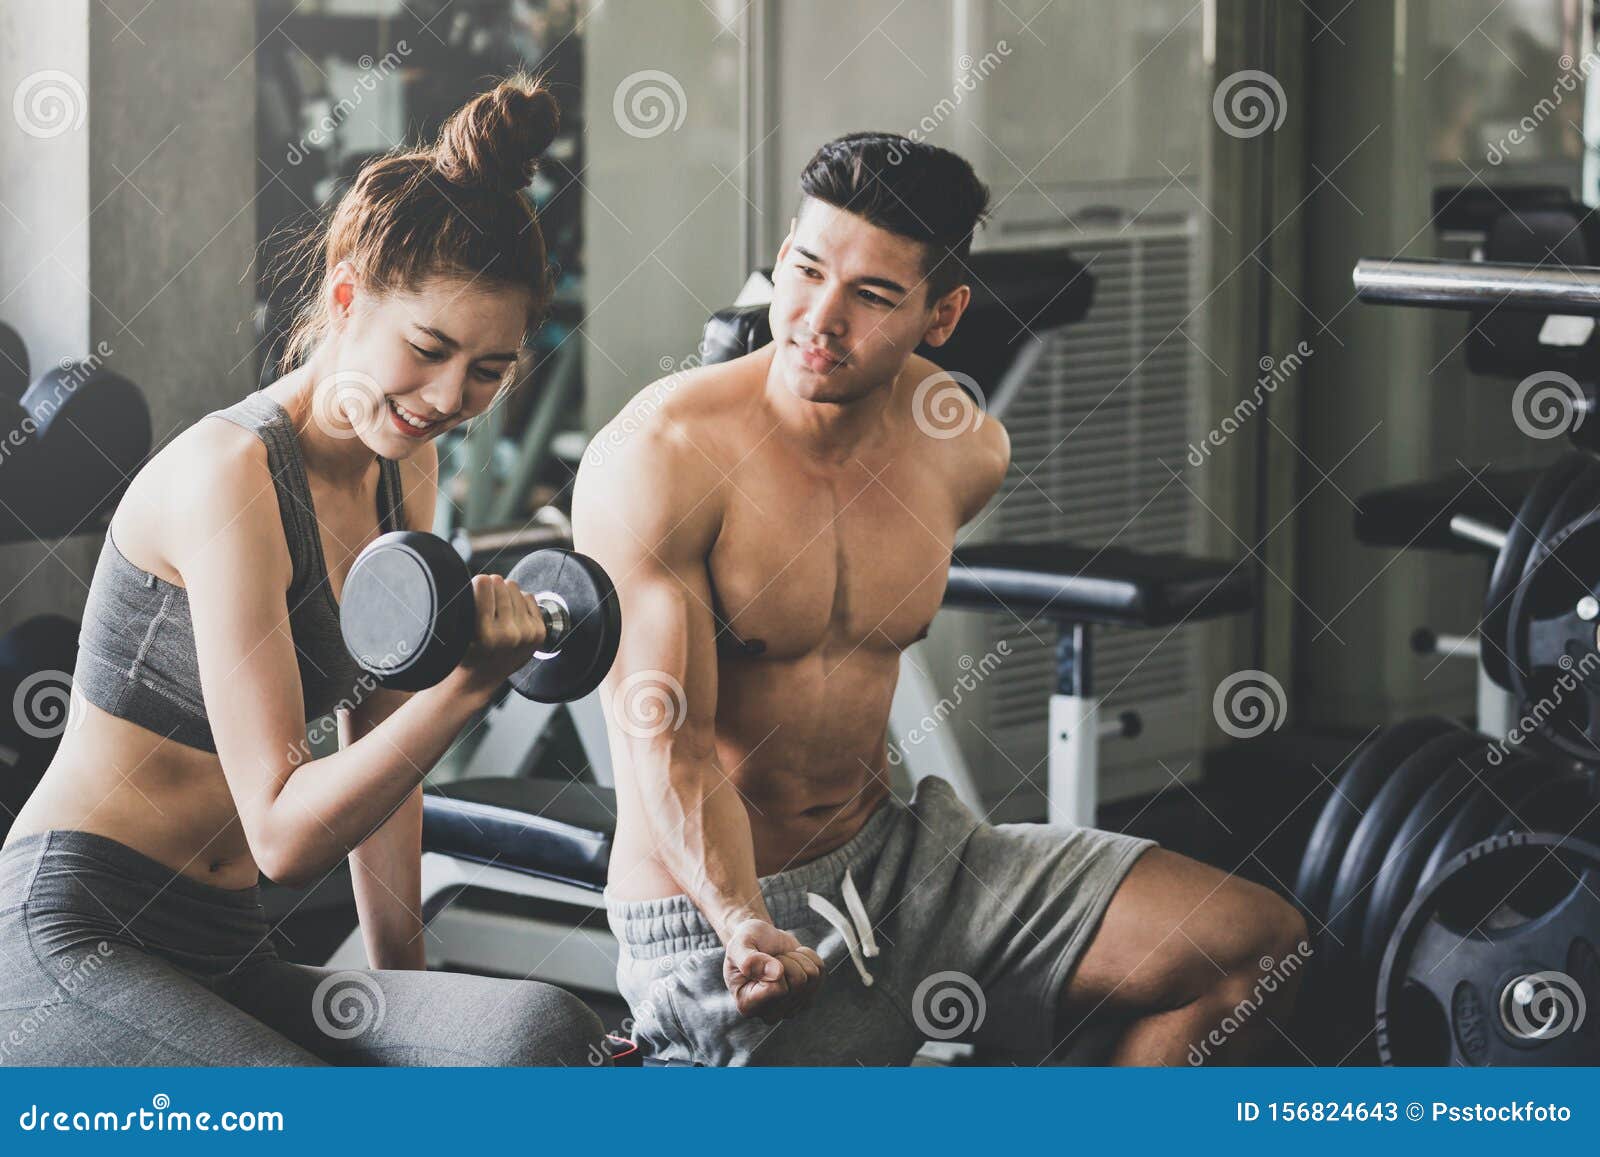 Девушка и парень занимаются любовью в спортзале